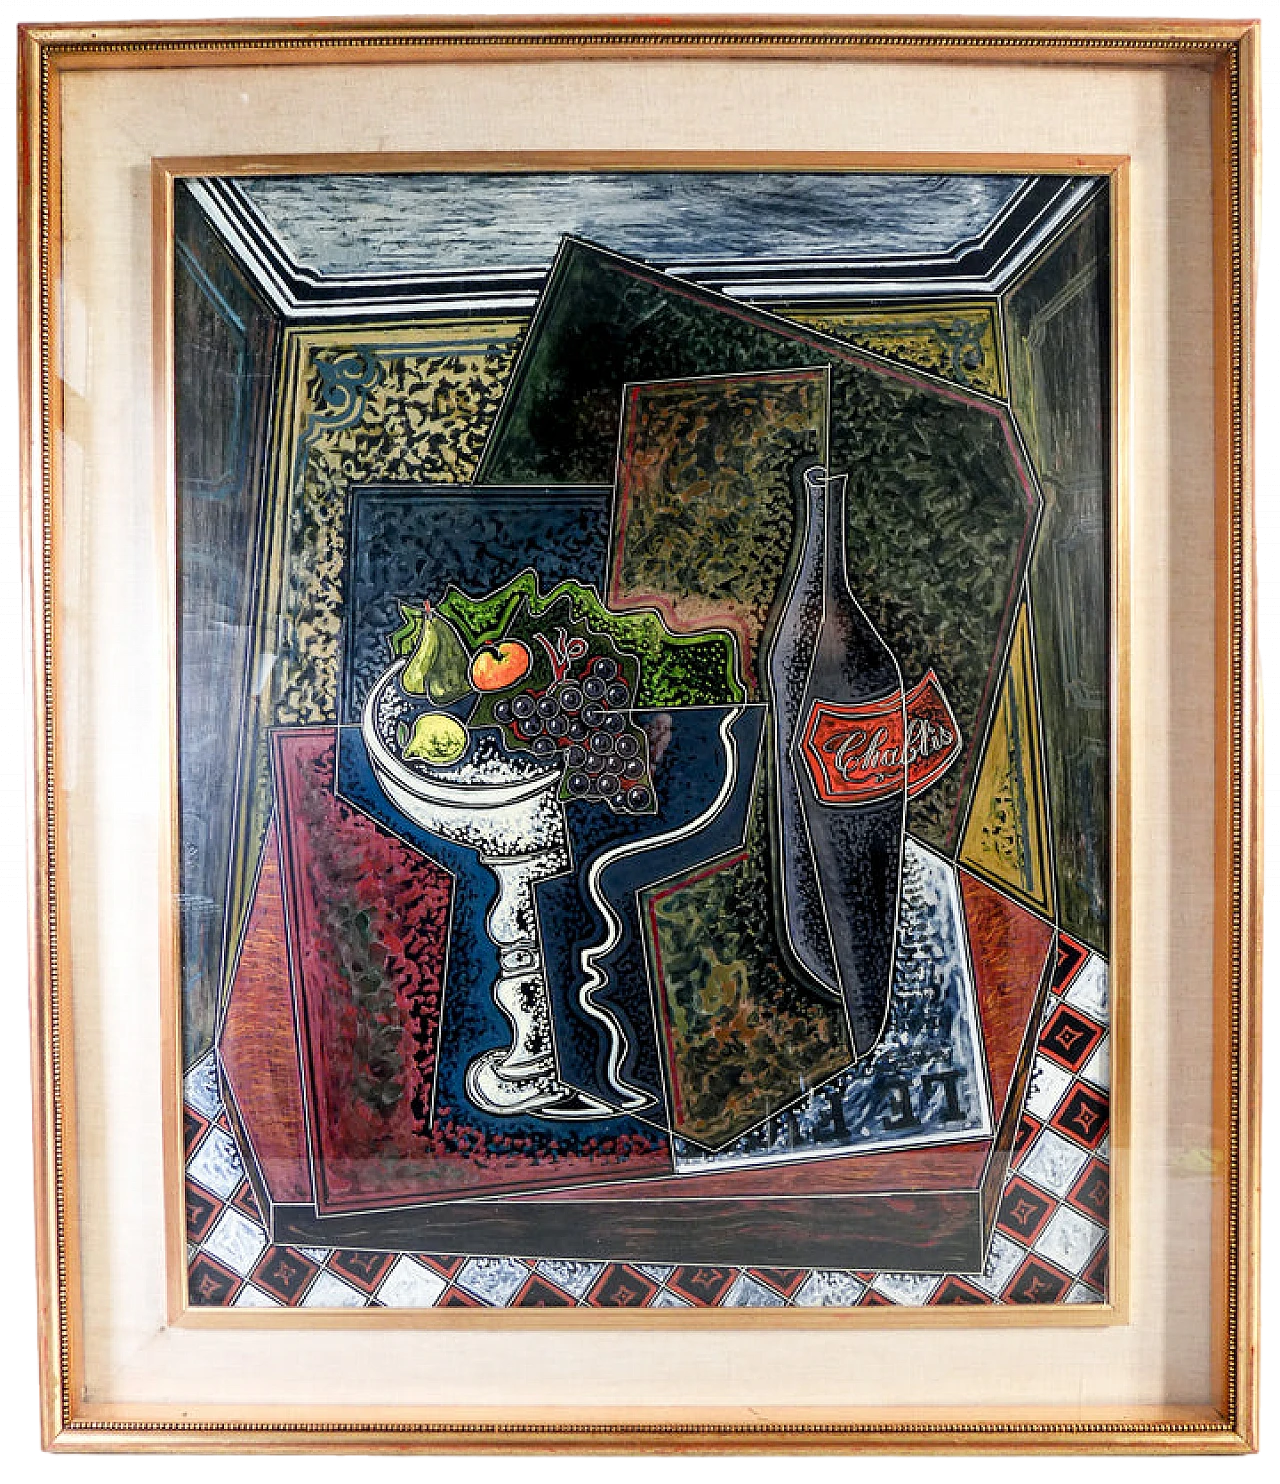 P. Oriani, Objets sur la table, encaustic painting on cardboard, 1930 19